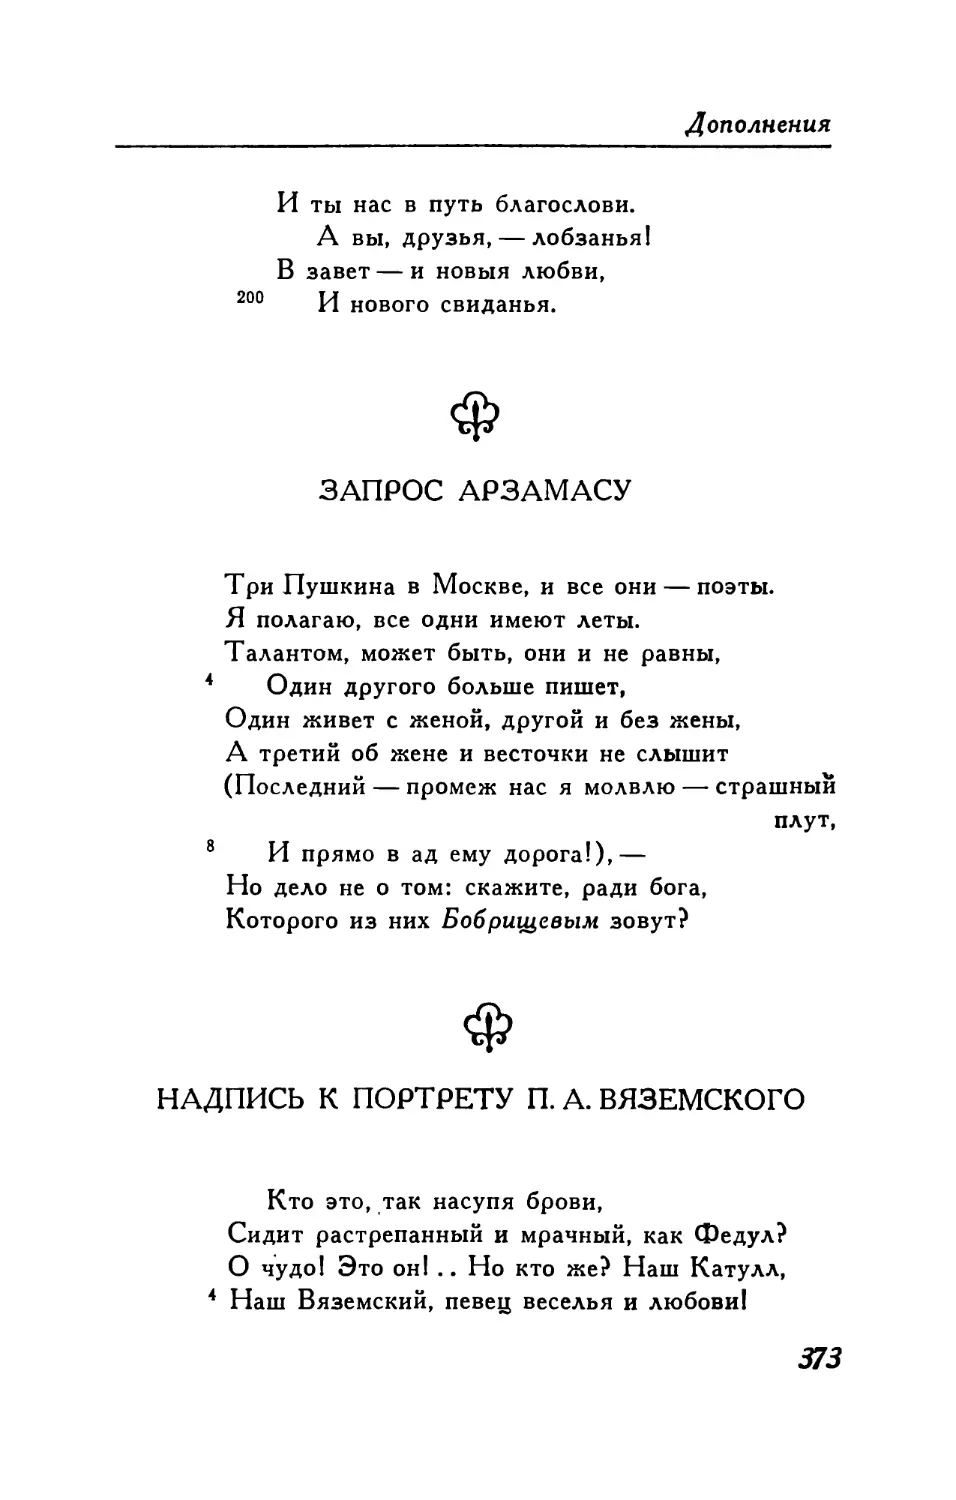 Запрос «Арзамасу»
Надпись к портрету П. А. Вяземского